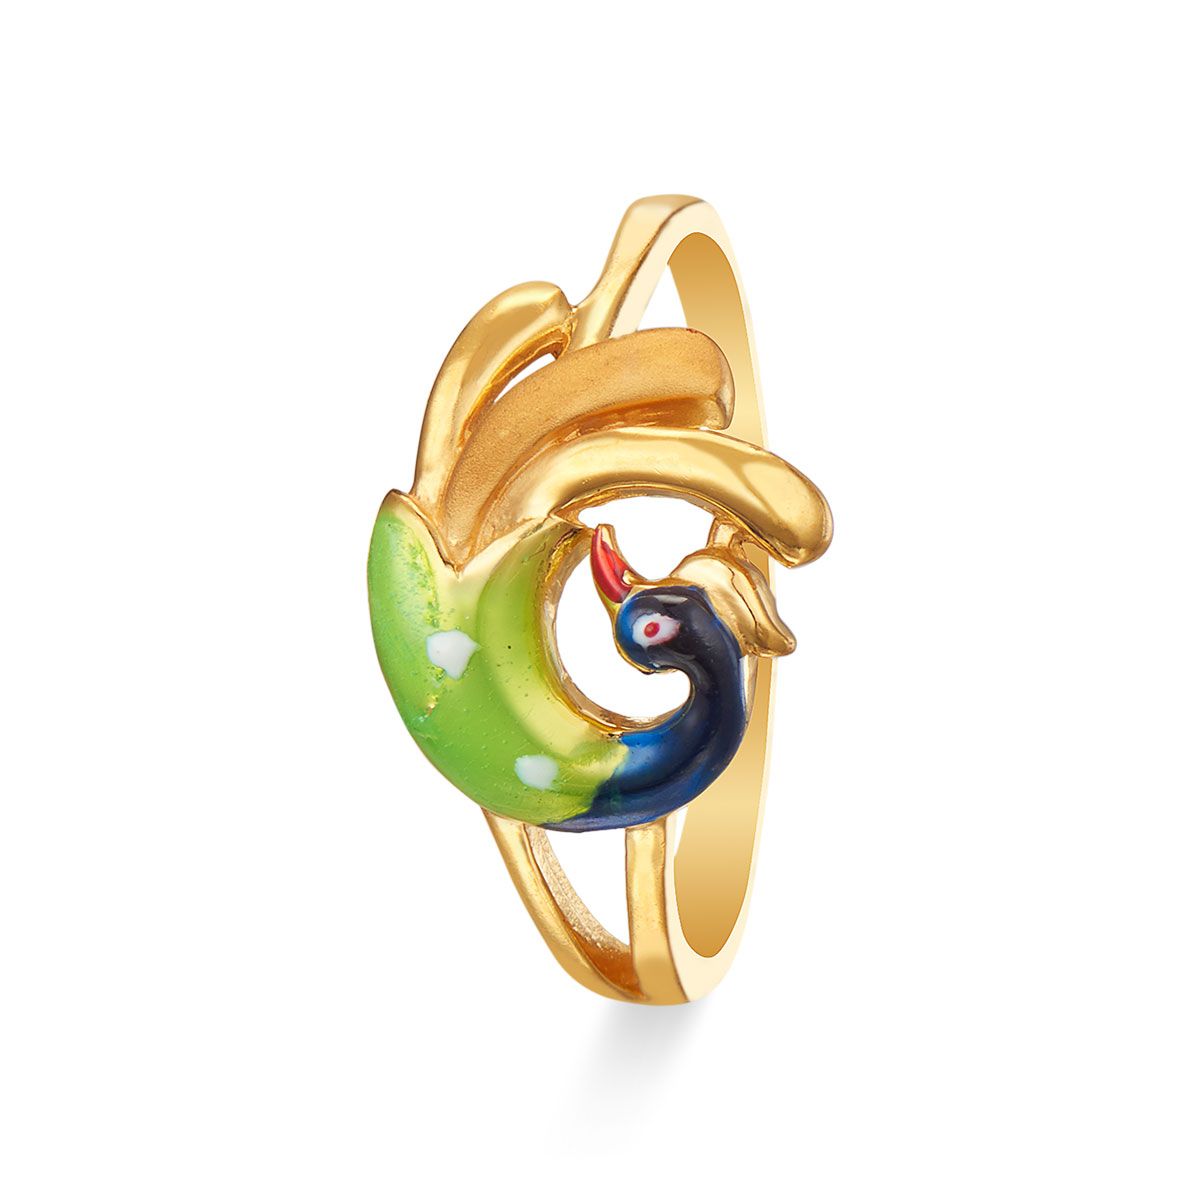 22K Gold 'Peacock' Vanki Ring with Cz & Color Stones - 235-GVR430 in 4.500  Grams